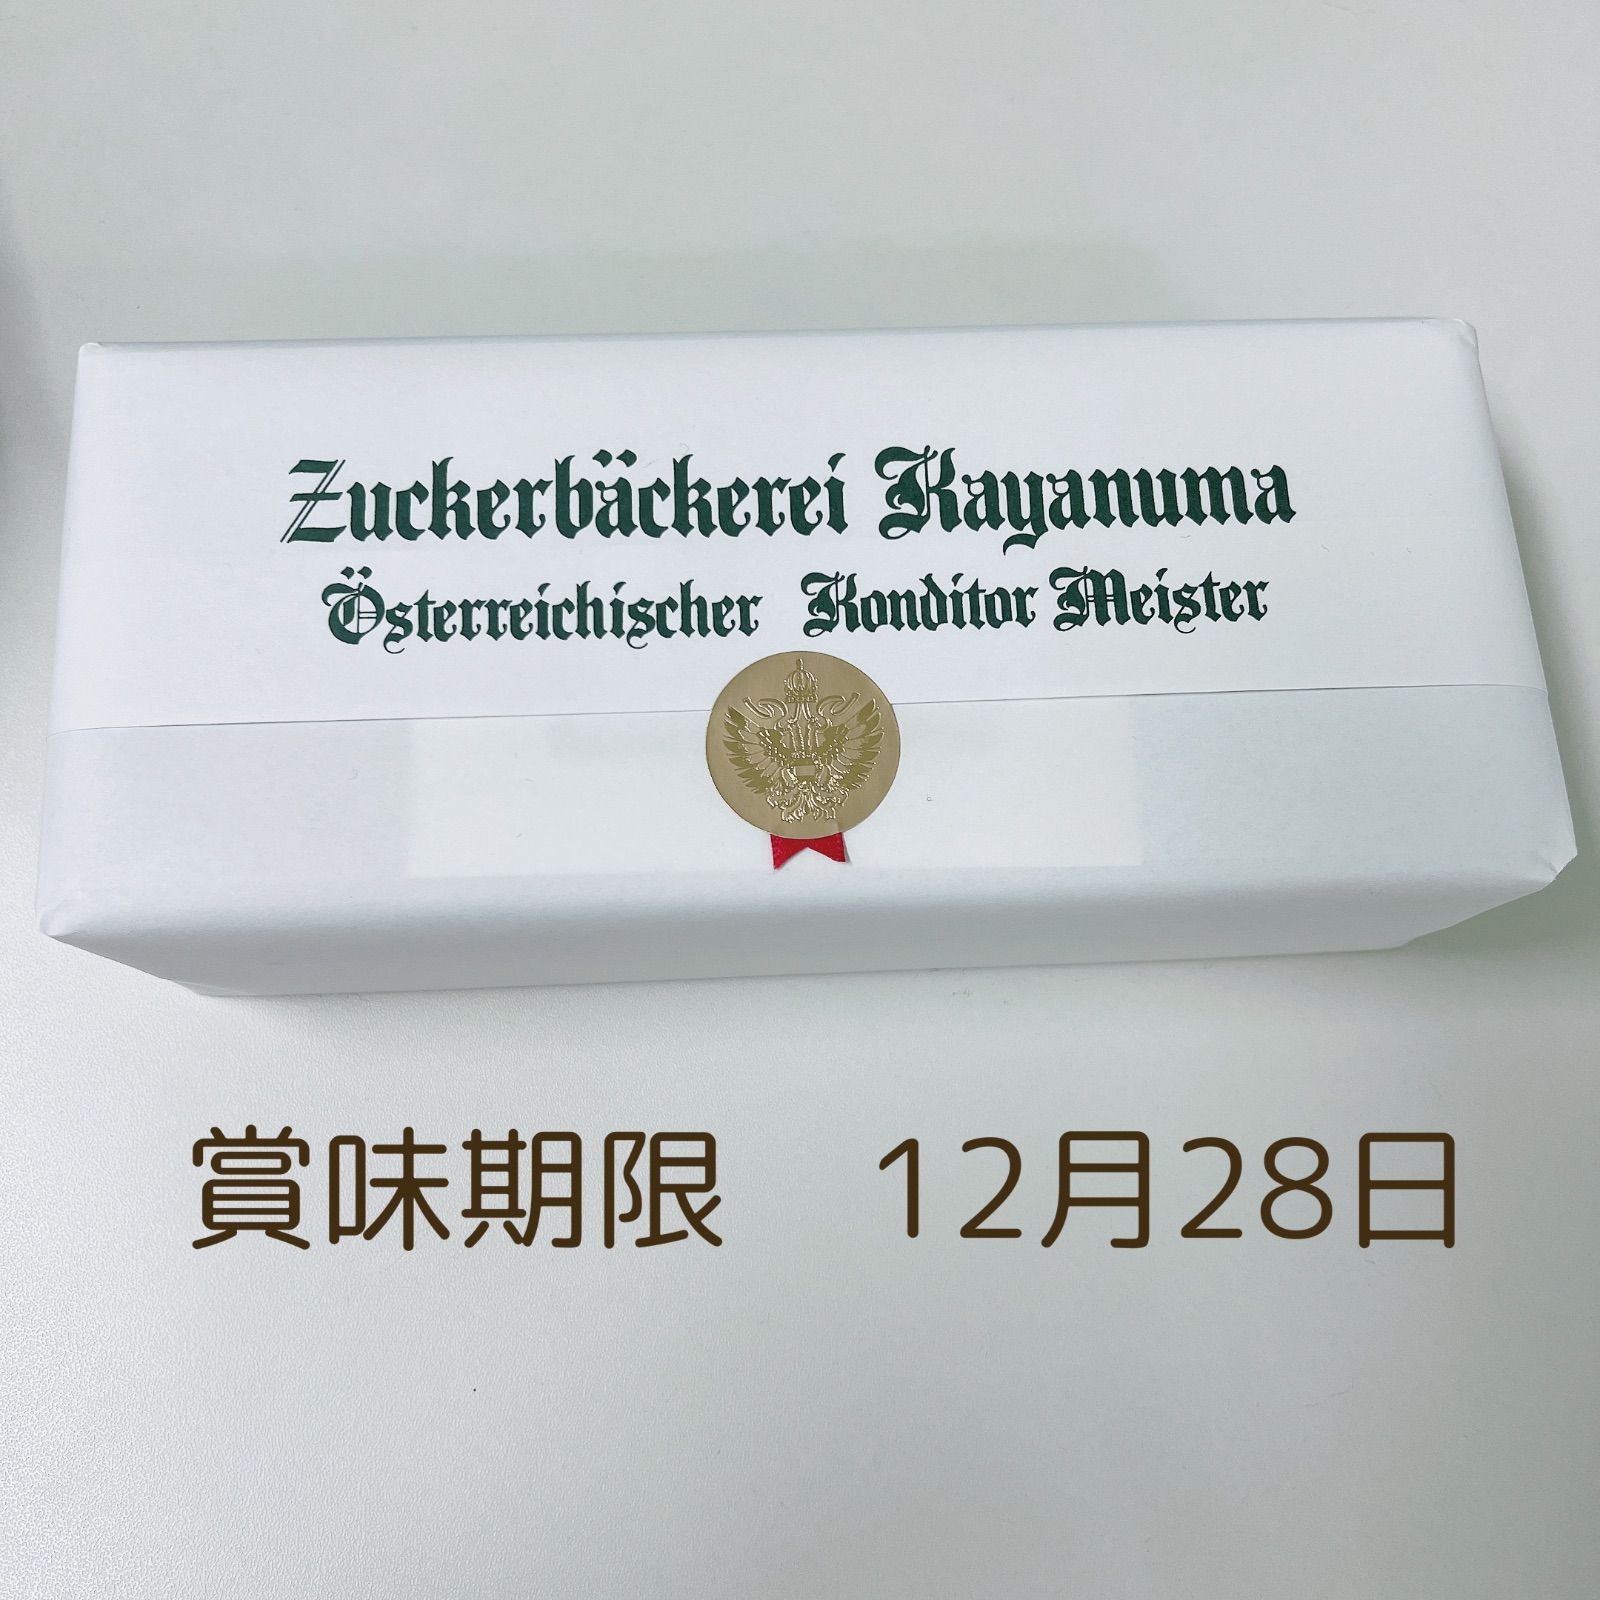 ツッカベッカライカヤヌマA缶、山本道子の店　チーズバジルスティック